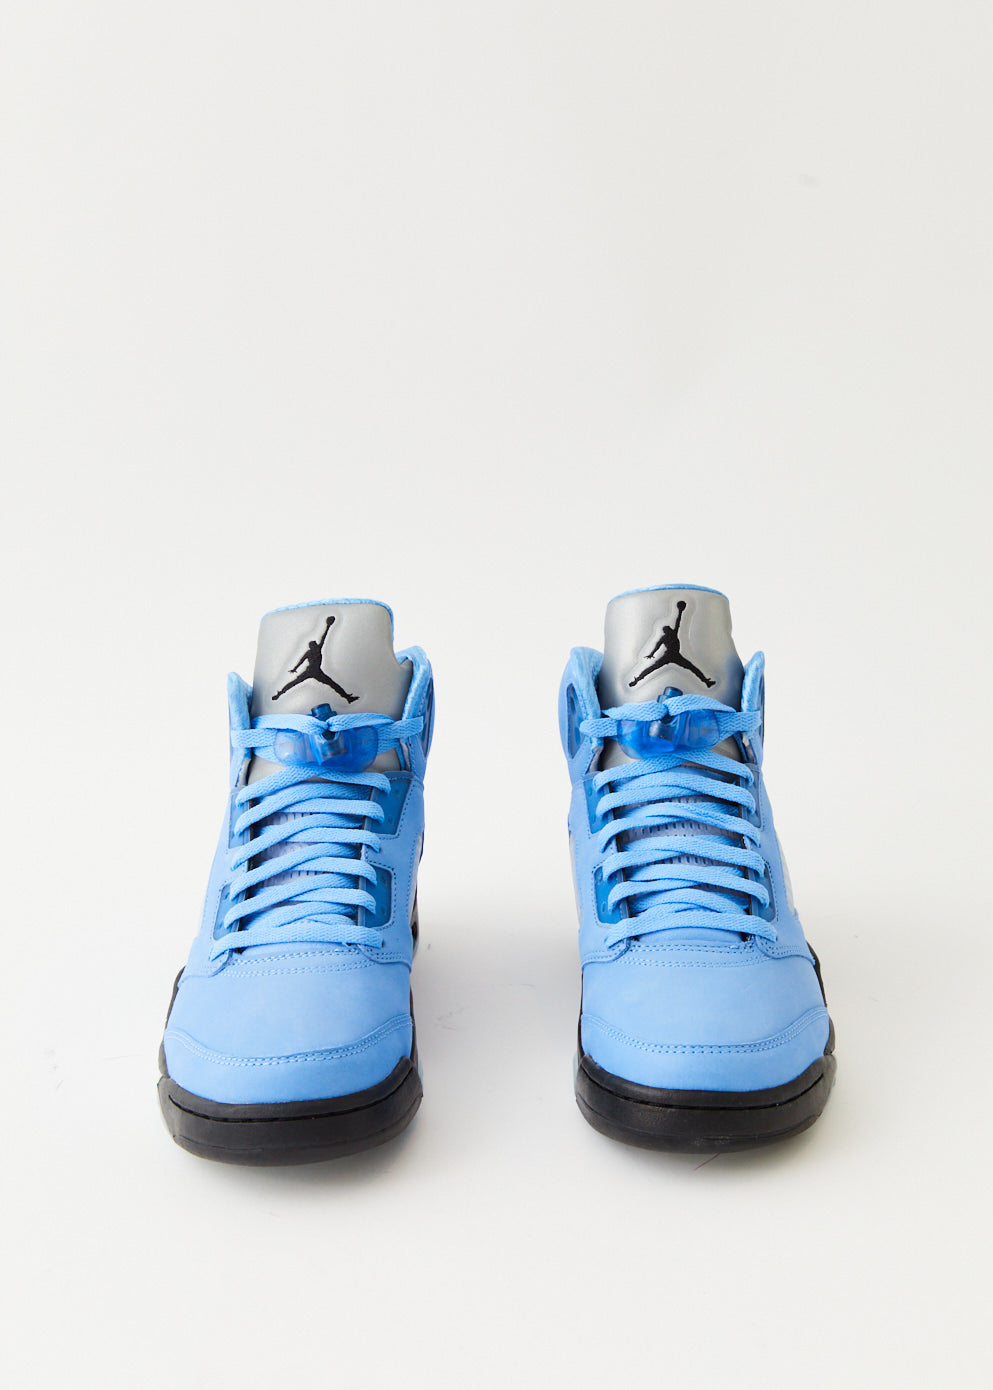 Air Jordan 5 Retro SE 'UNC' Sneakers